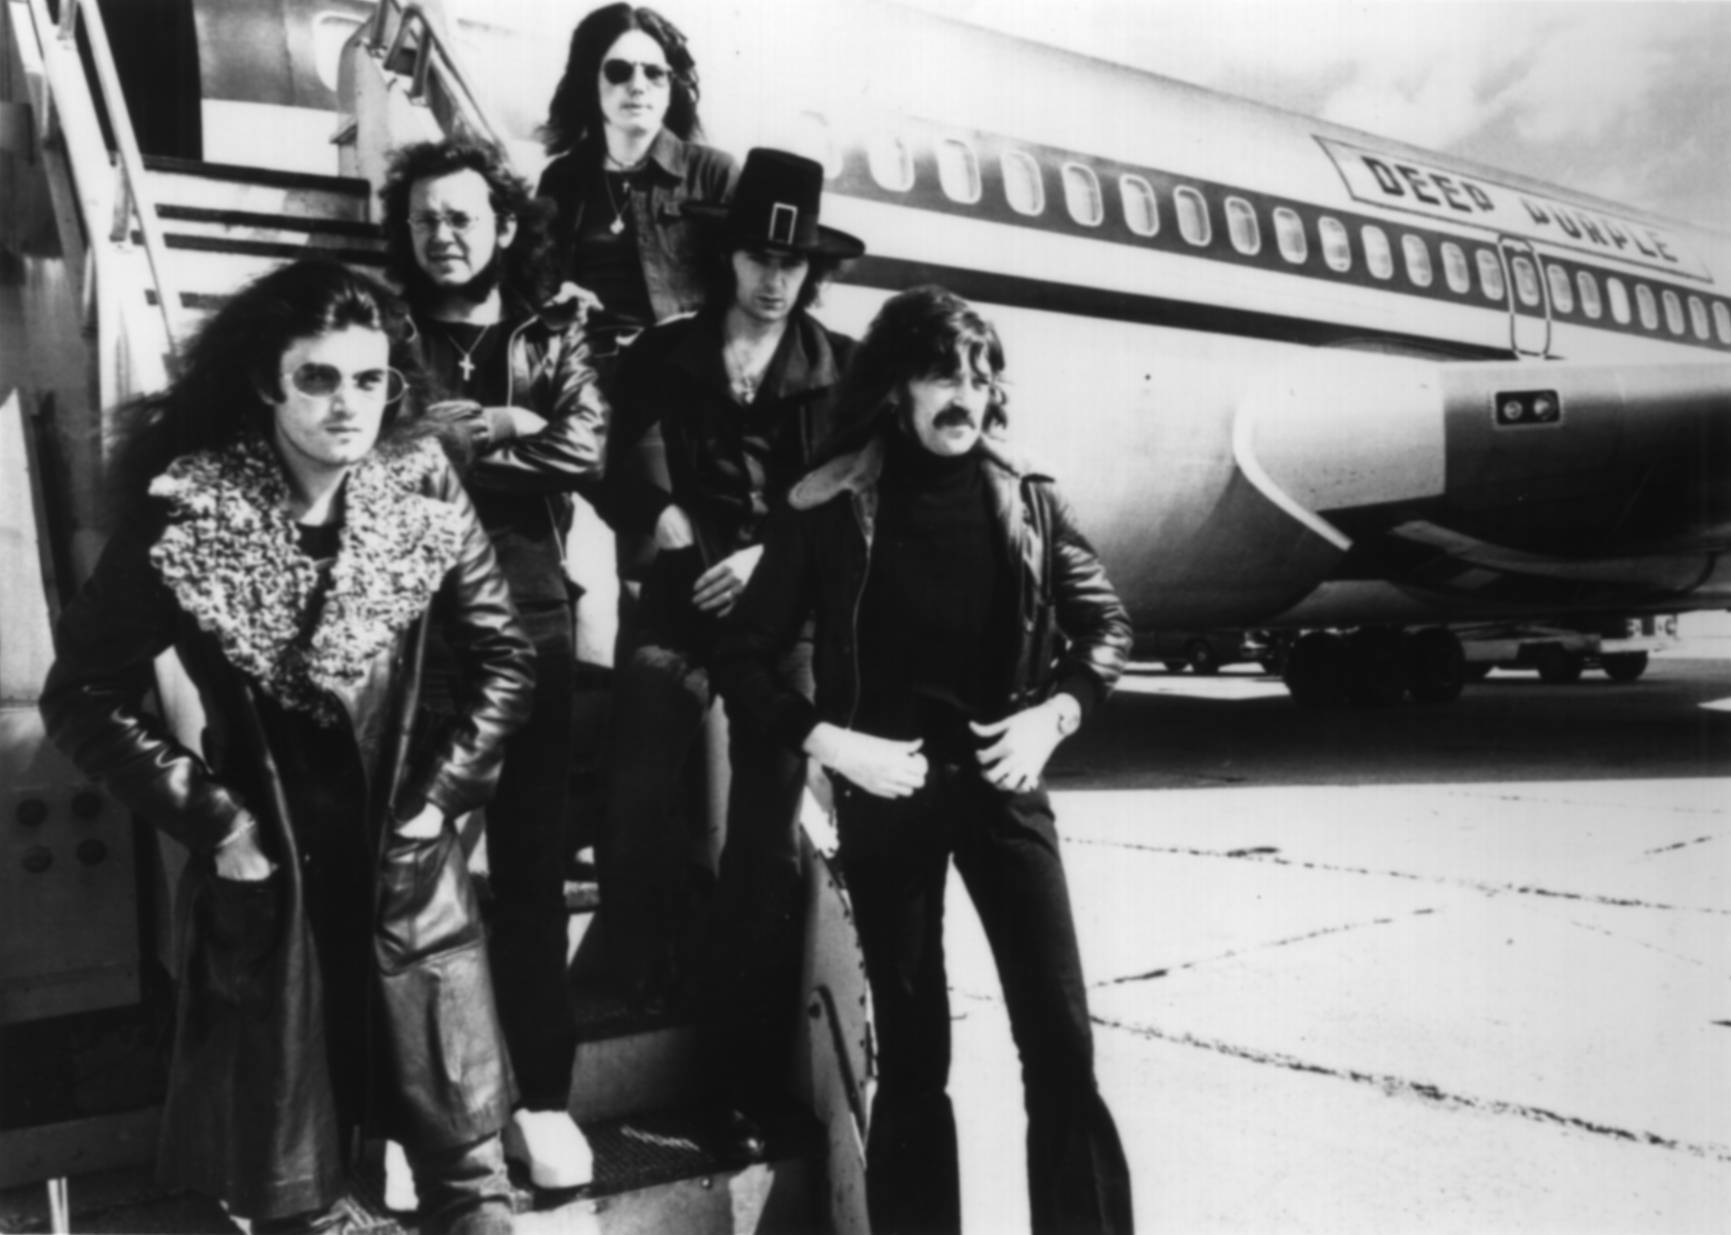 Classic Rock Music Legend Deep Purple 1974 Photograph Wallpaper